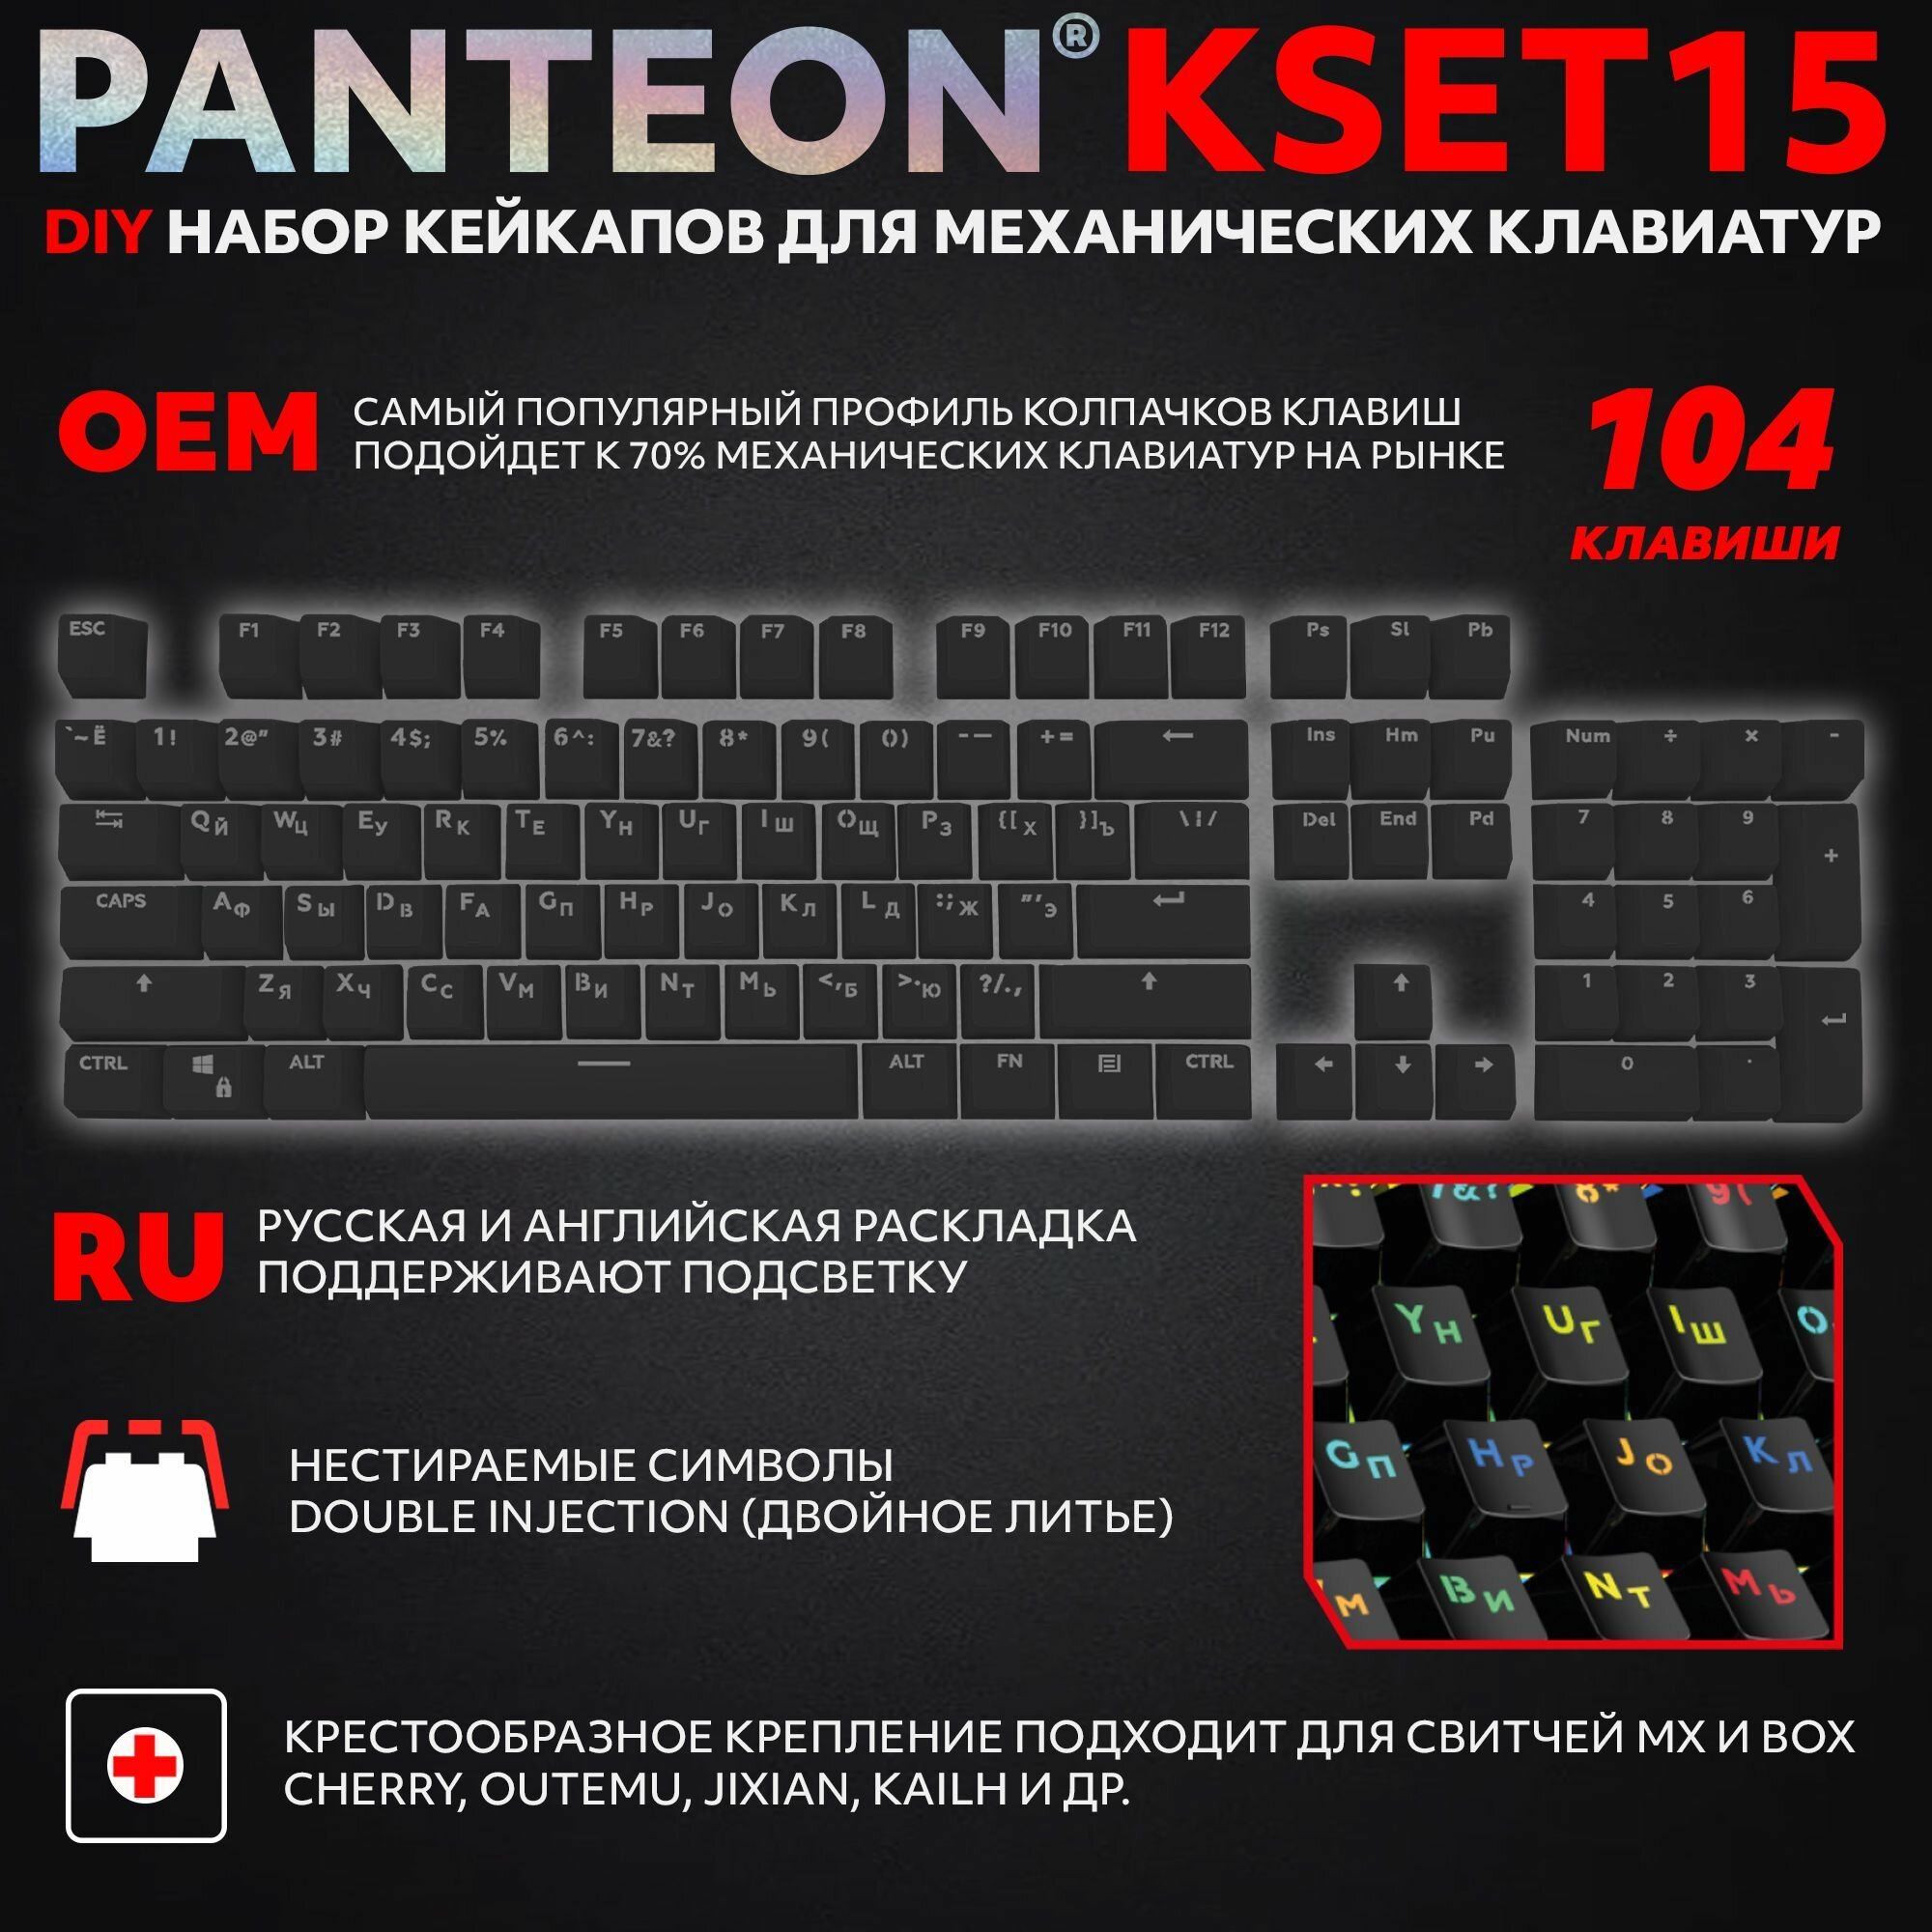 PANTEON KSET15 Black Универсальный набор кейкапов для механических клавиатур (104 клавиши), цвет: черный